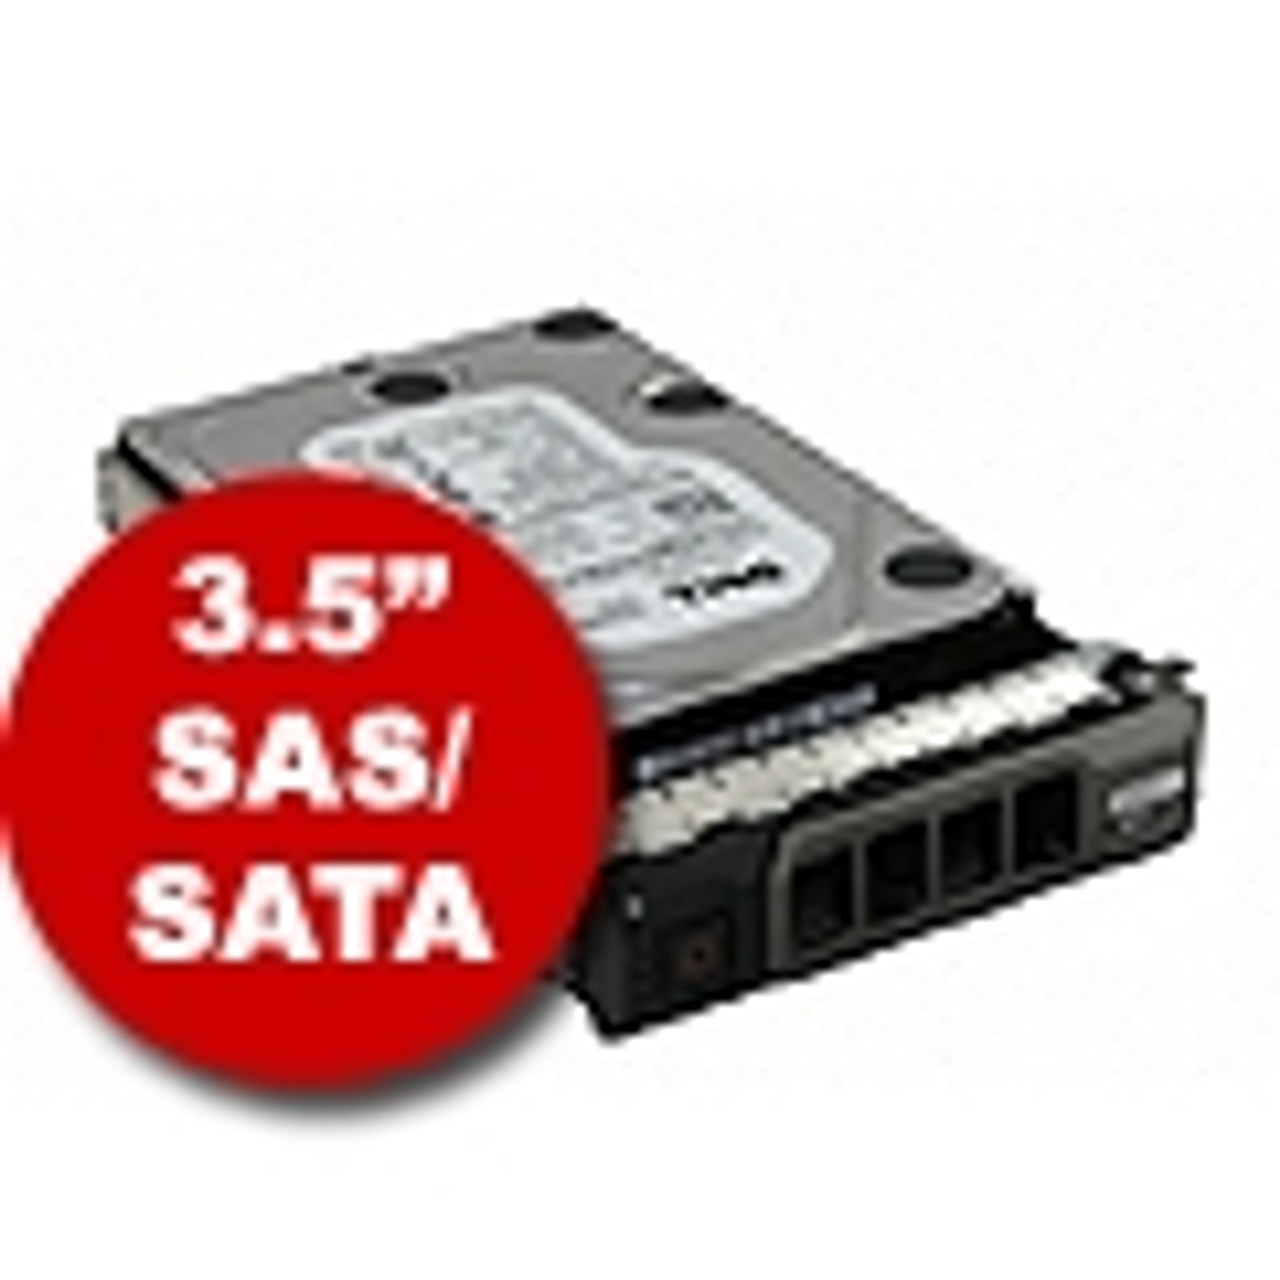 3.5" SAS/SATA Hard Drives & Trays